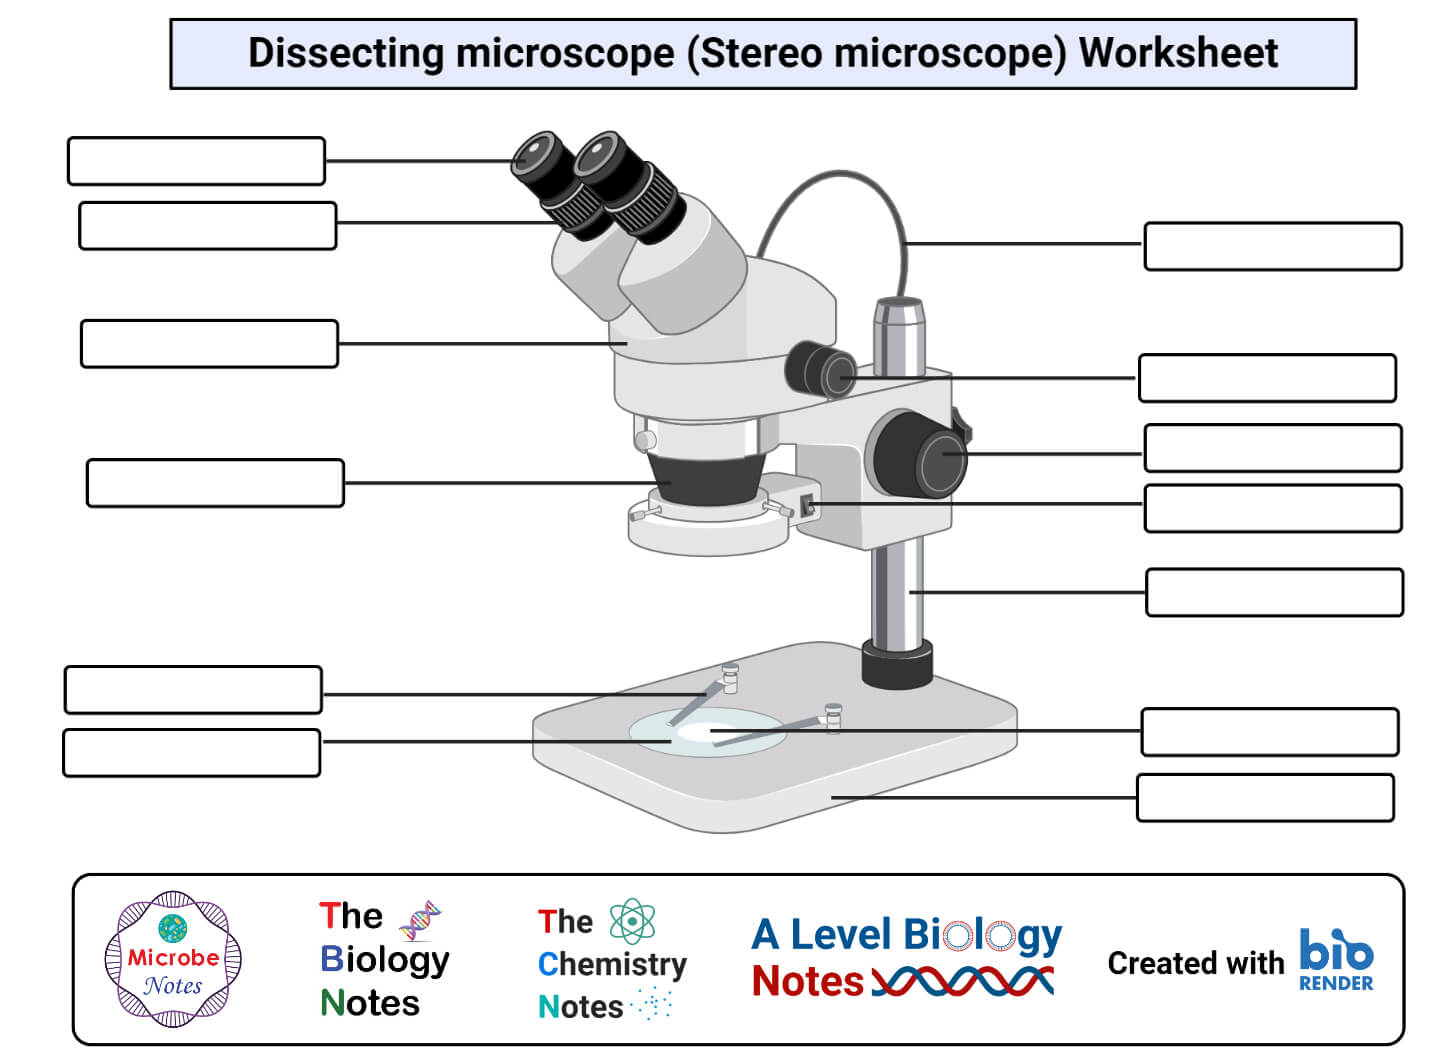 Hoja de trabajo del microscopio de disección (microscopio estereoscópico).